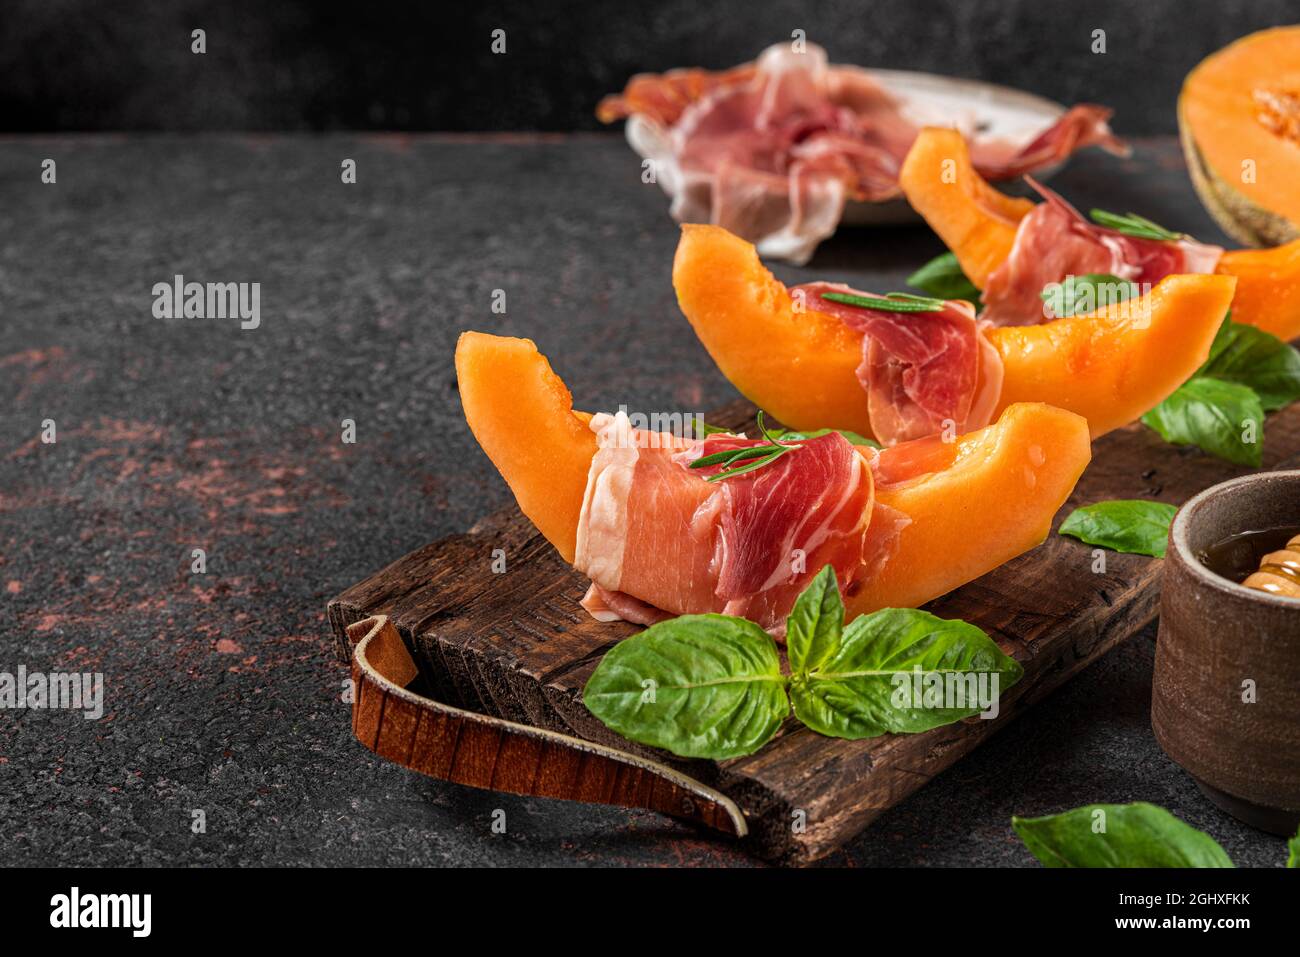 Prosciutto-Schinken mit Melone-Cantaloupe-Scheiben, Honig und Basilikum auf Schneidebrett auf dunklem Hintergrund. Italienische Vorspeise. Gesunde Ernährung Stockfoto